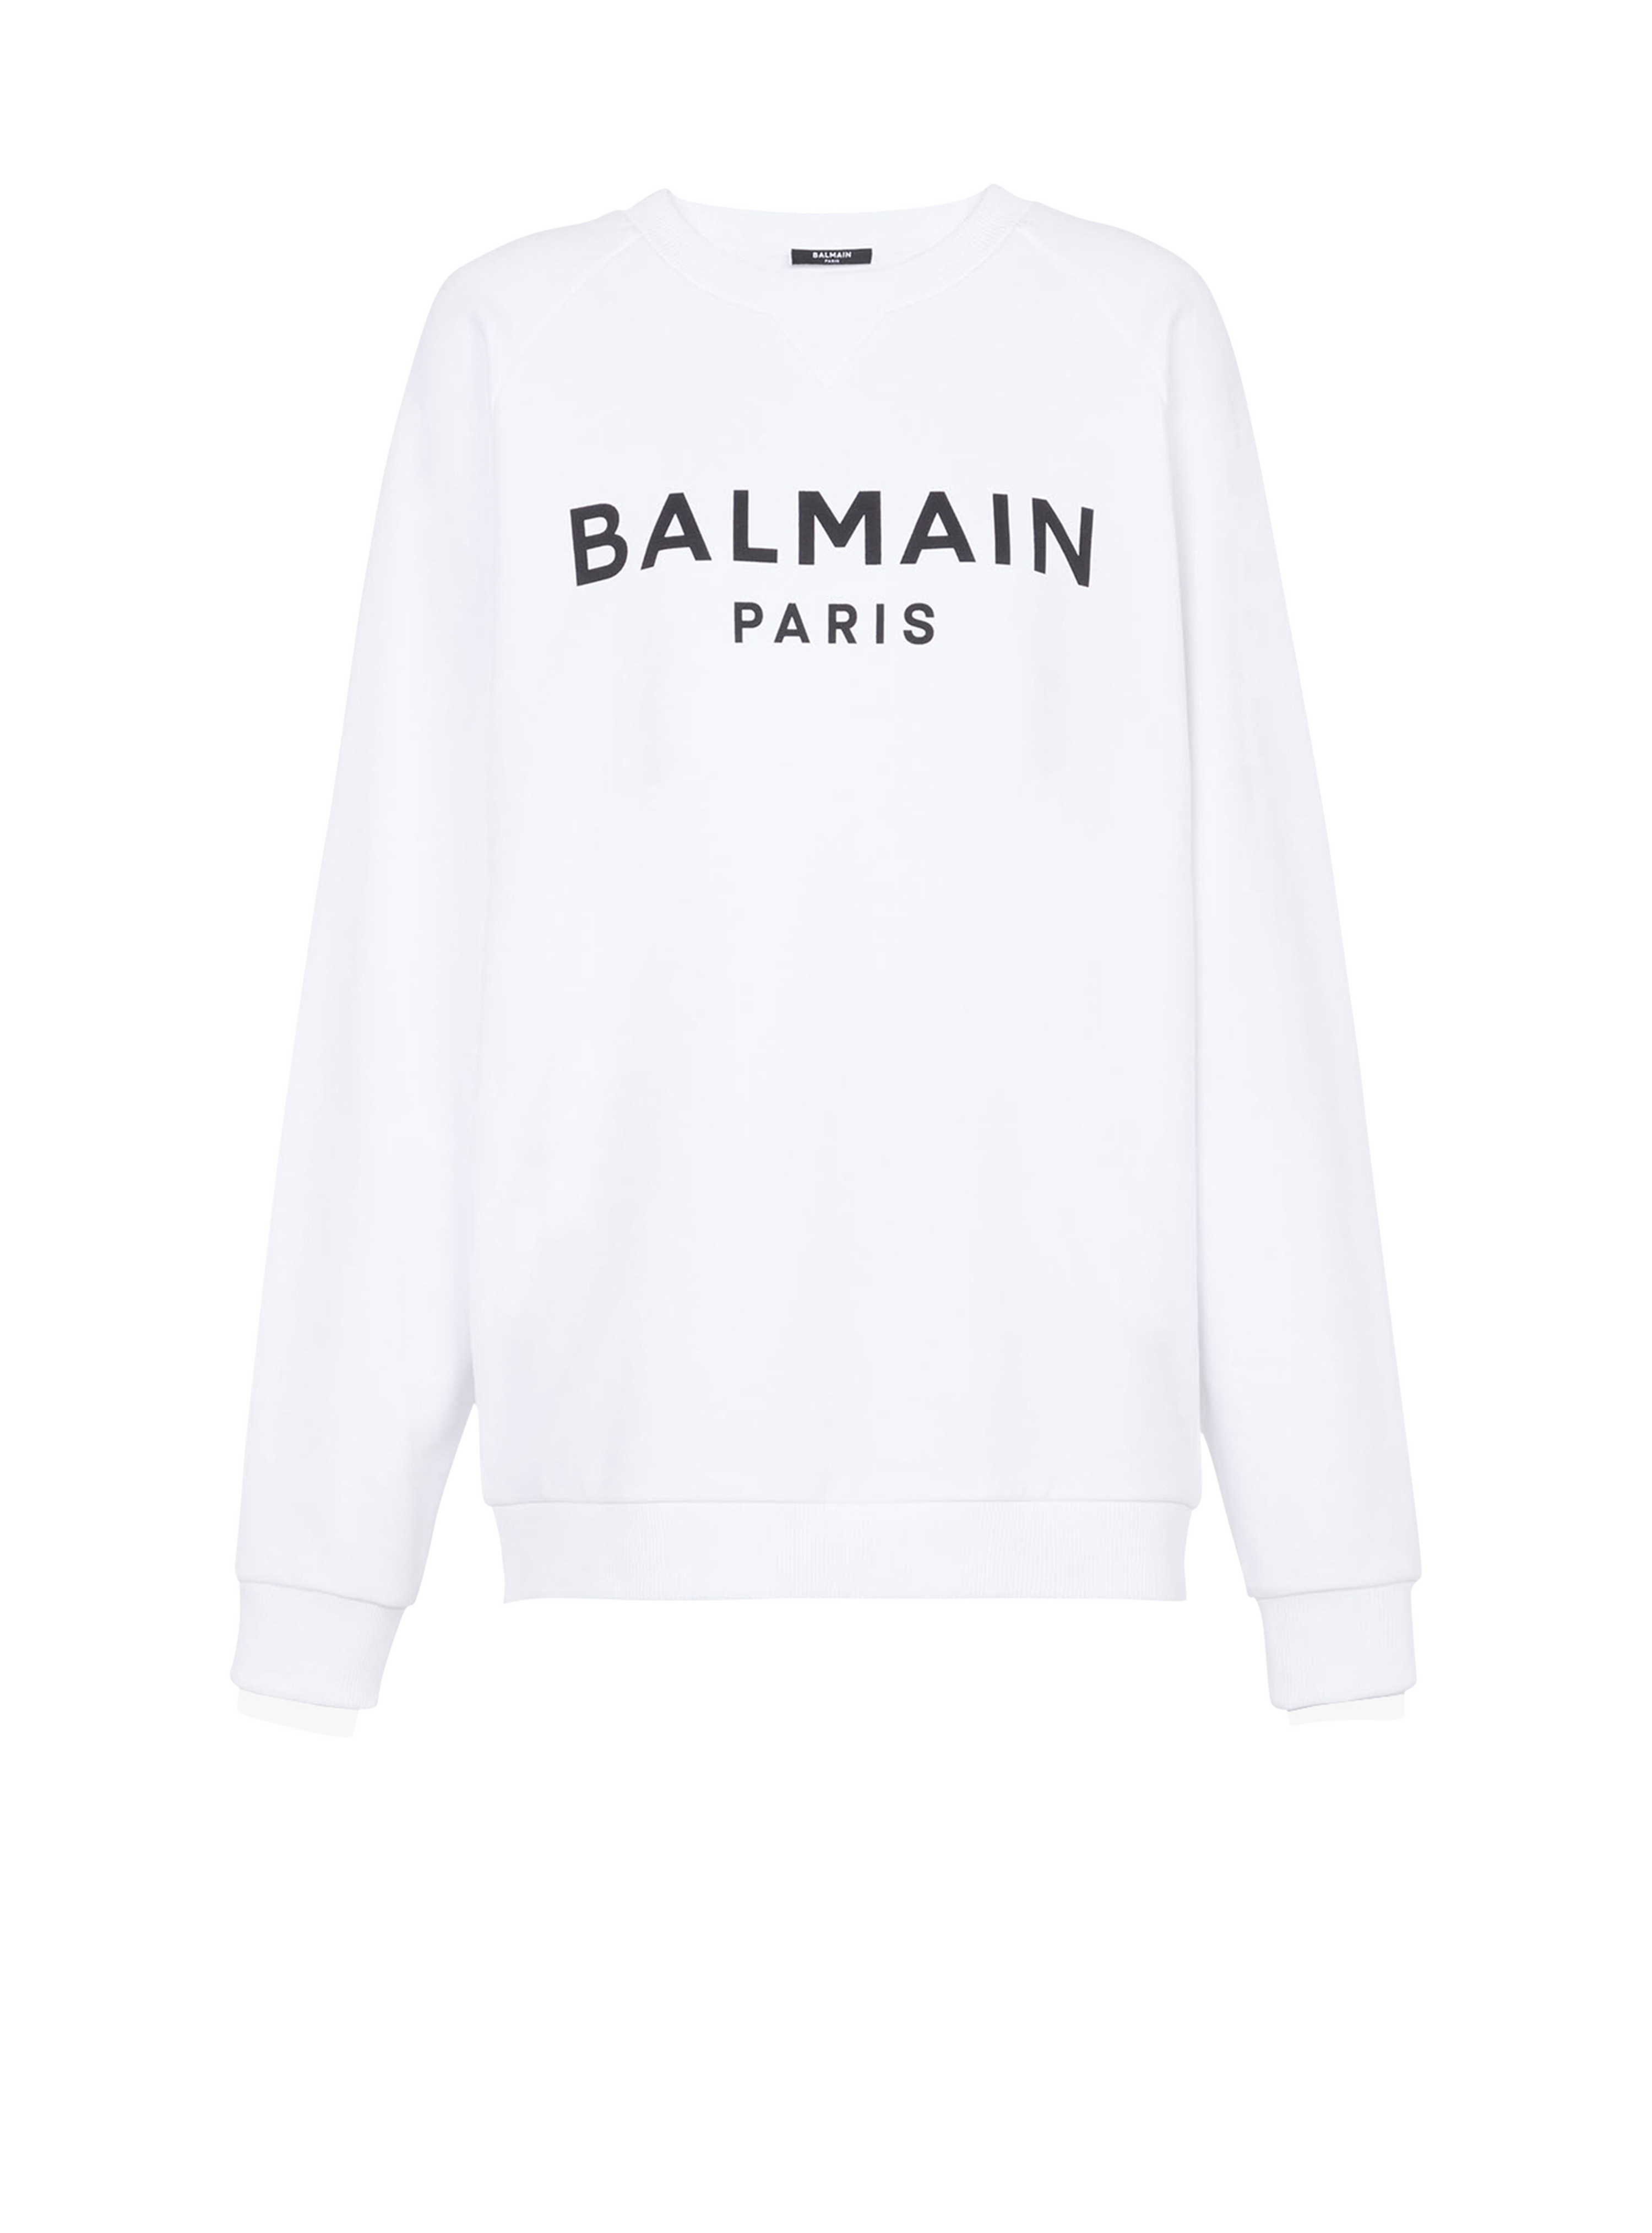 Sweat en coton imprimé logo Balmain Paris noir, blanc